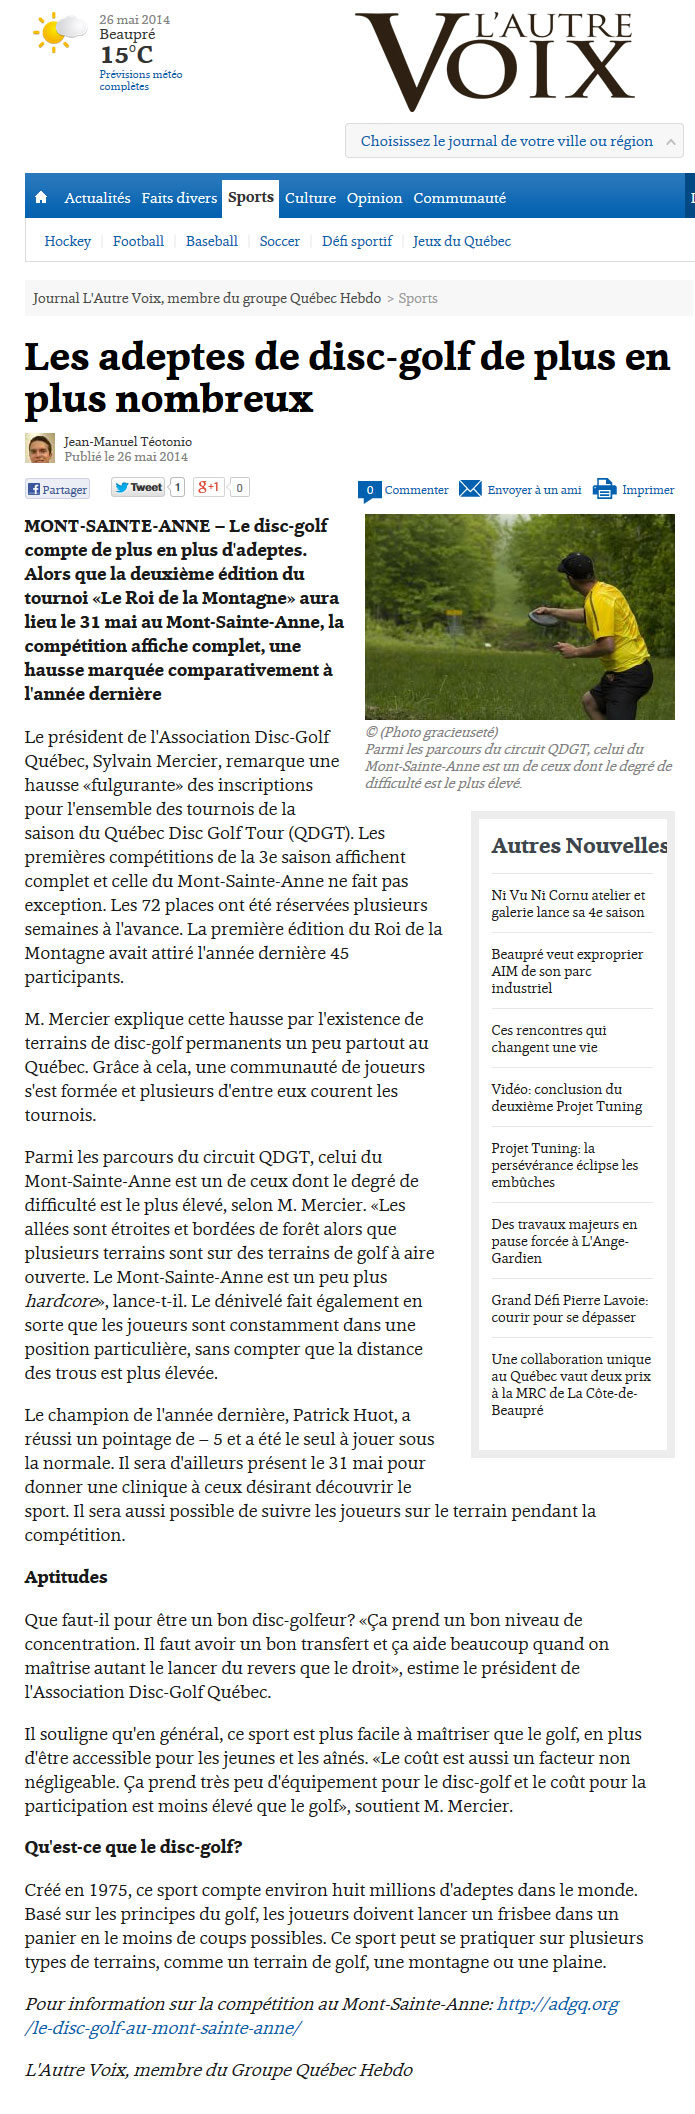 2014-05-26-Les-adeptes-de-disc-golf-Sports-Journal-L-Autre-Voix